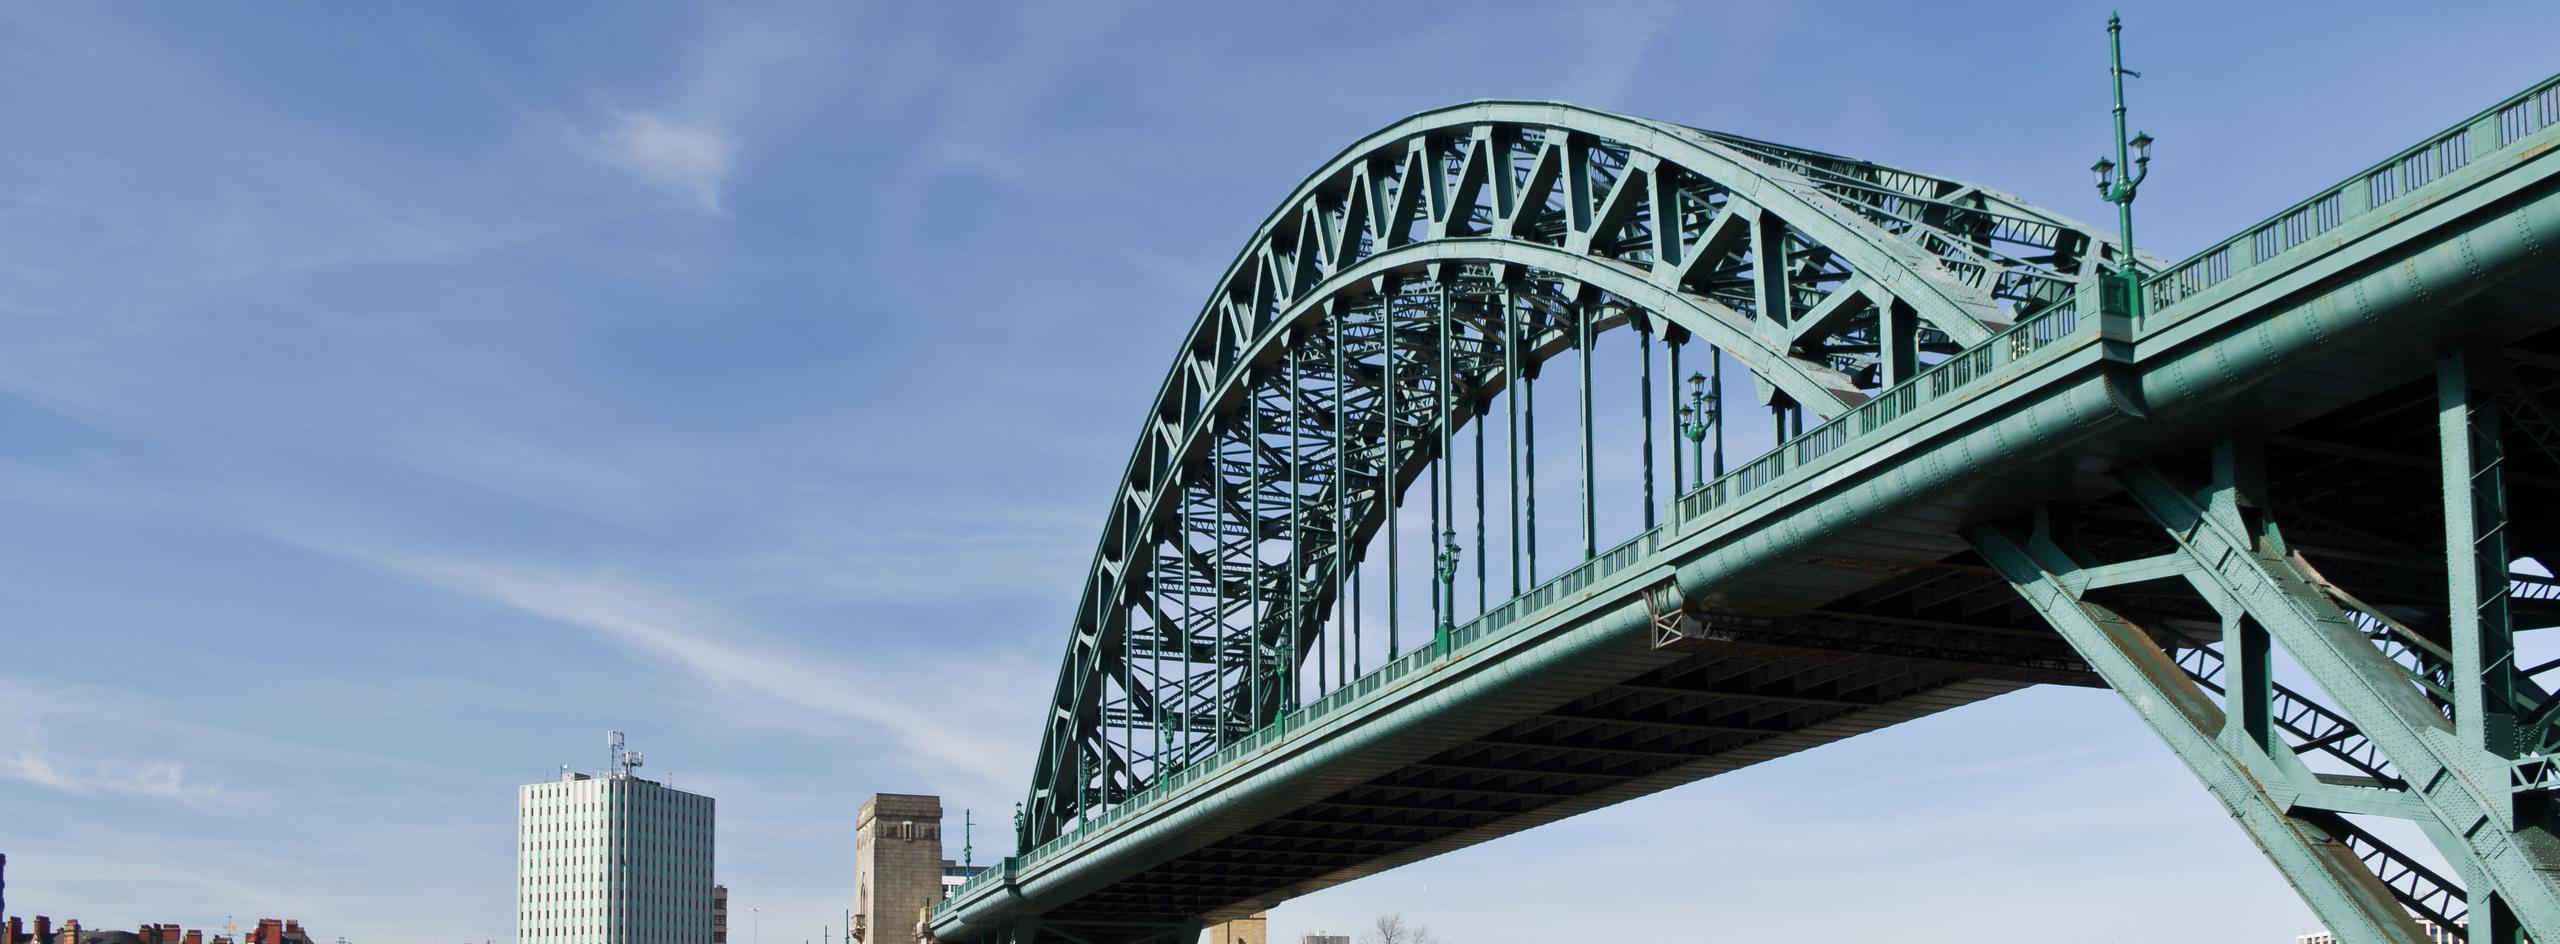 The Tyne Bridge in Newcastle upon Tyne, UK